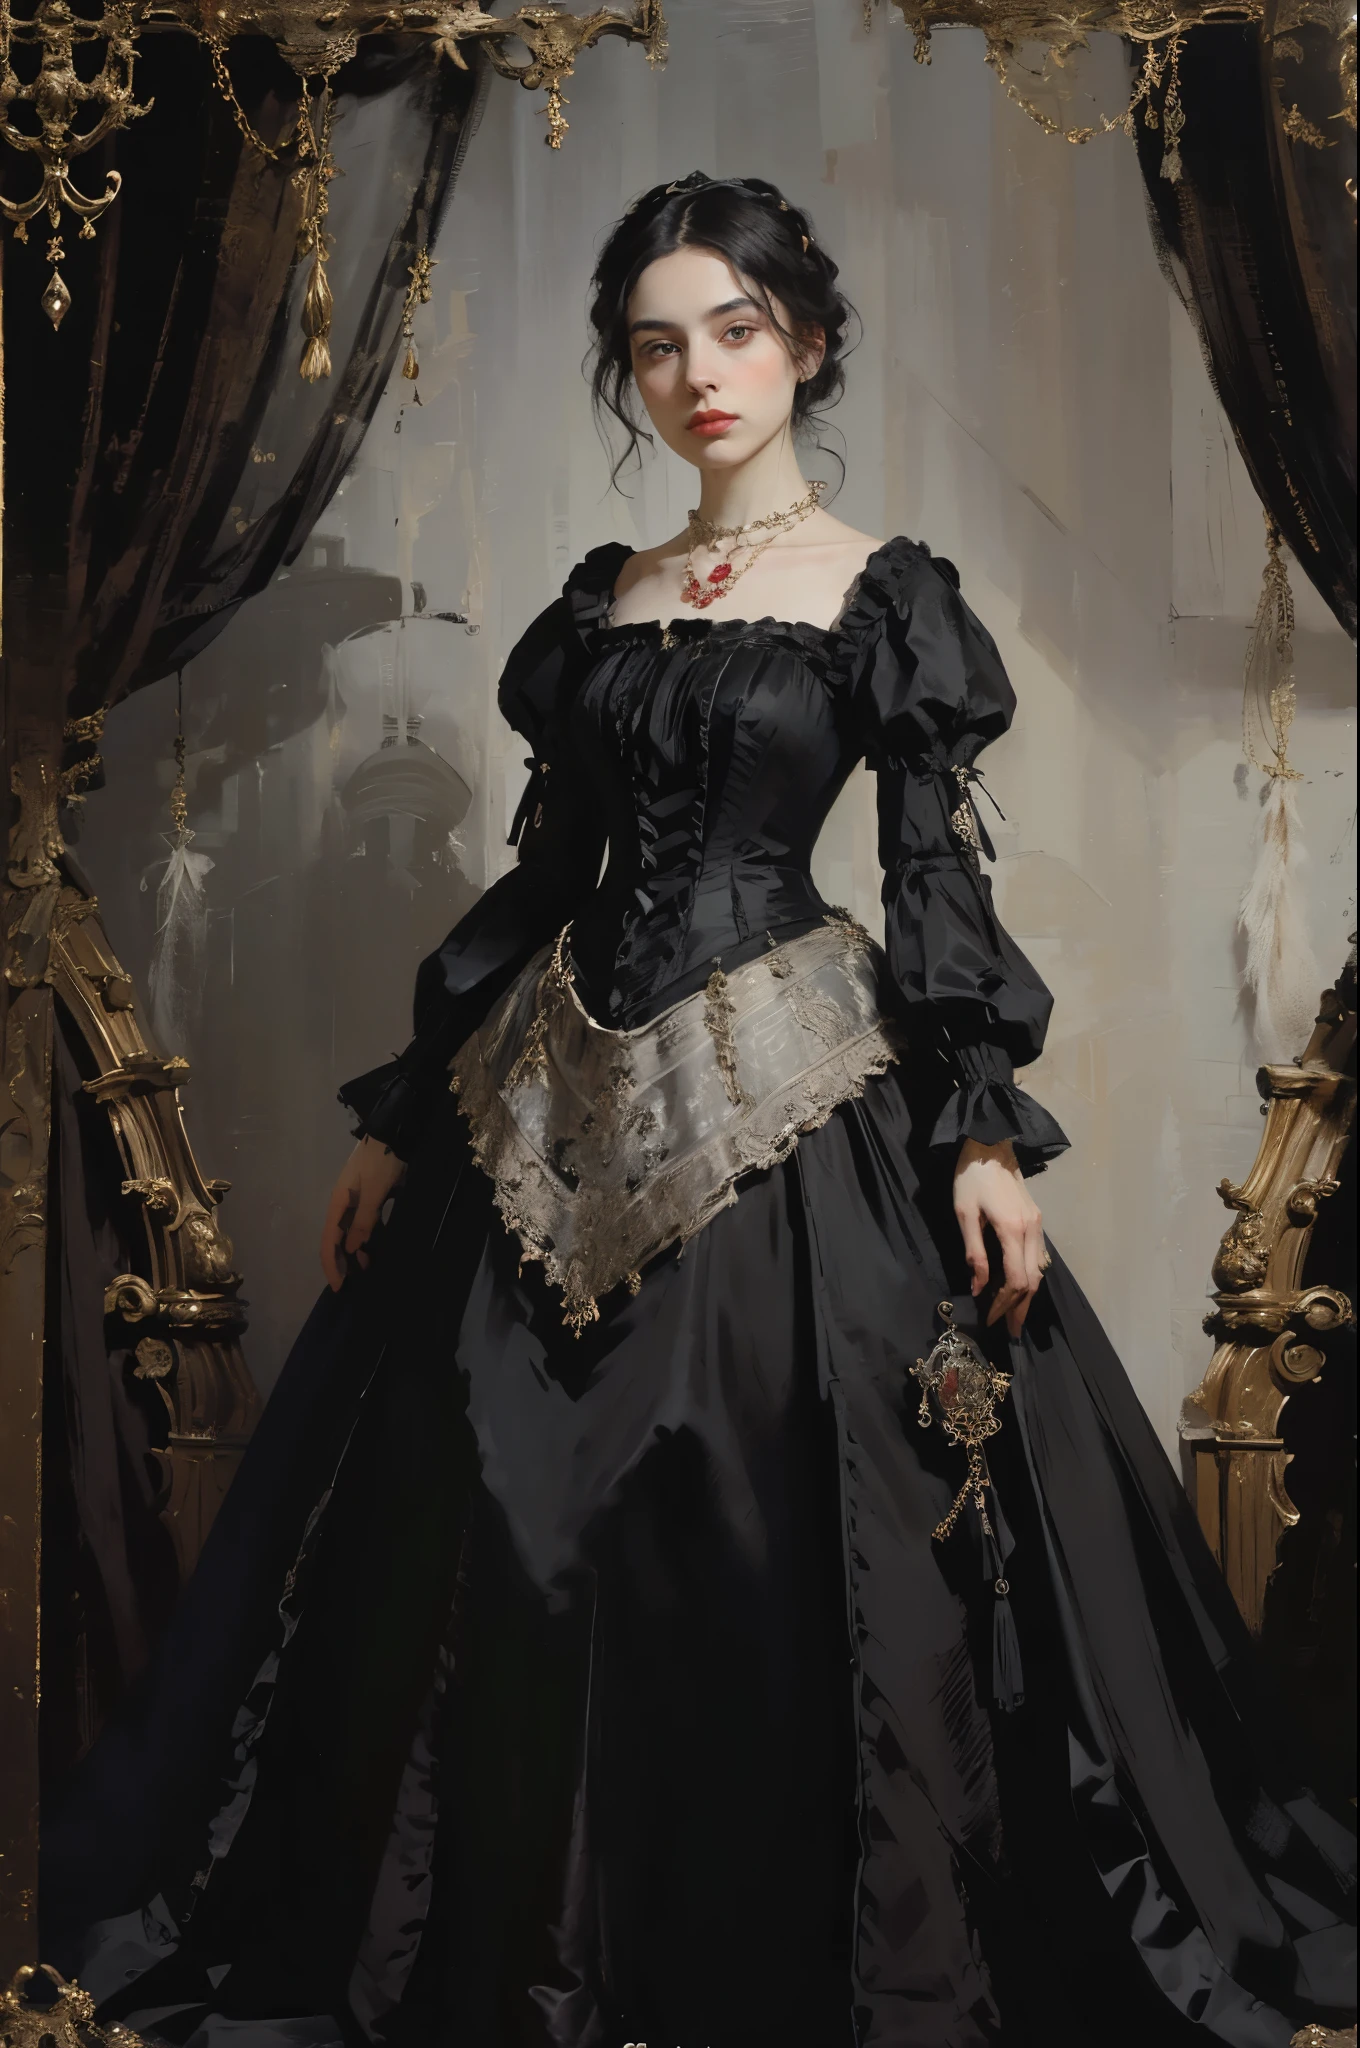 古典繪畫, ((肖像: 1.3)), 穿黑裙子的女孩, 維多利亞風格的禮服, (維多利亞時代的晚禮服: 1.3), 這件衣服有立領, 一個25歲的年輕女孩, 皮膚蒼白, 細長的, 帶有強調色的單色影像, 紅寶石項鍊,